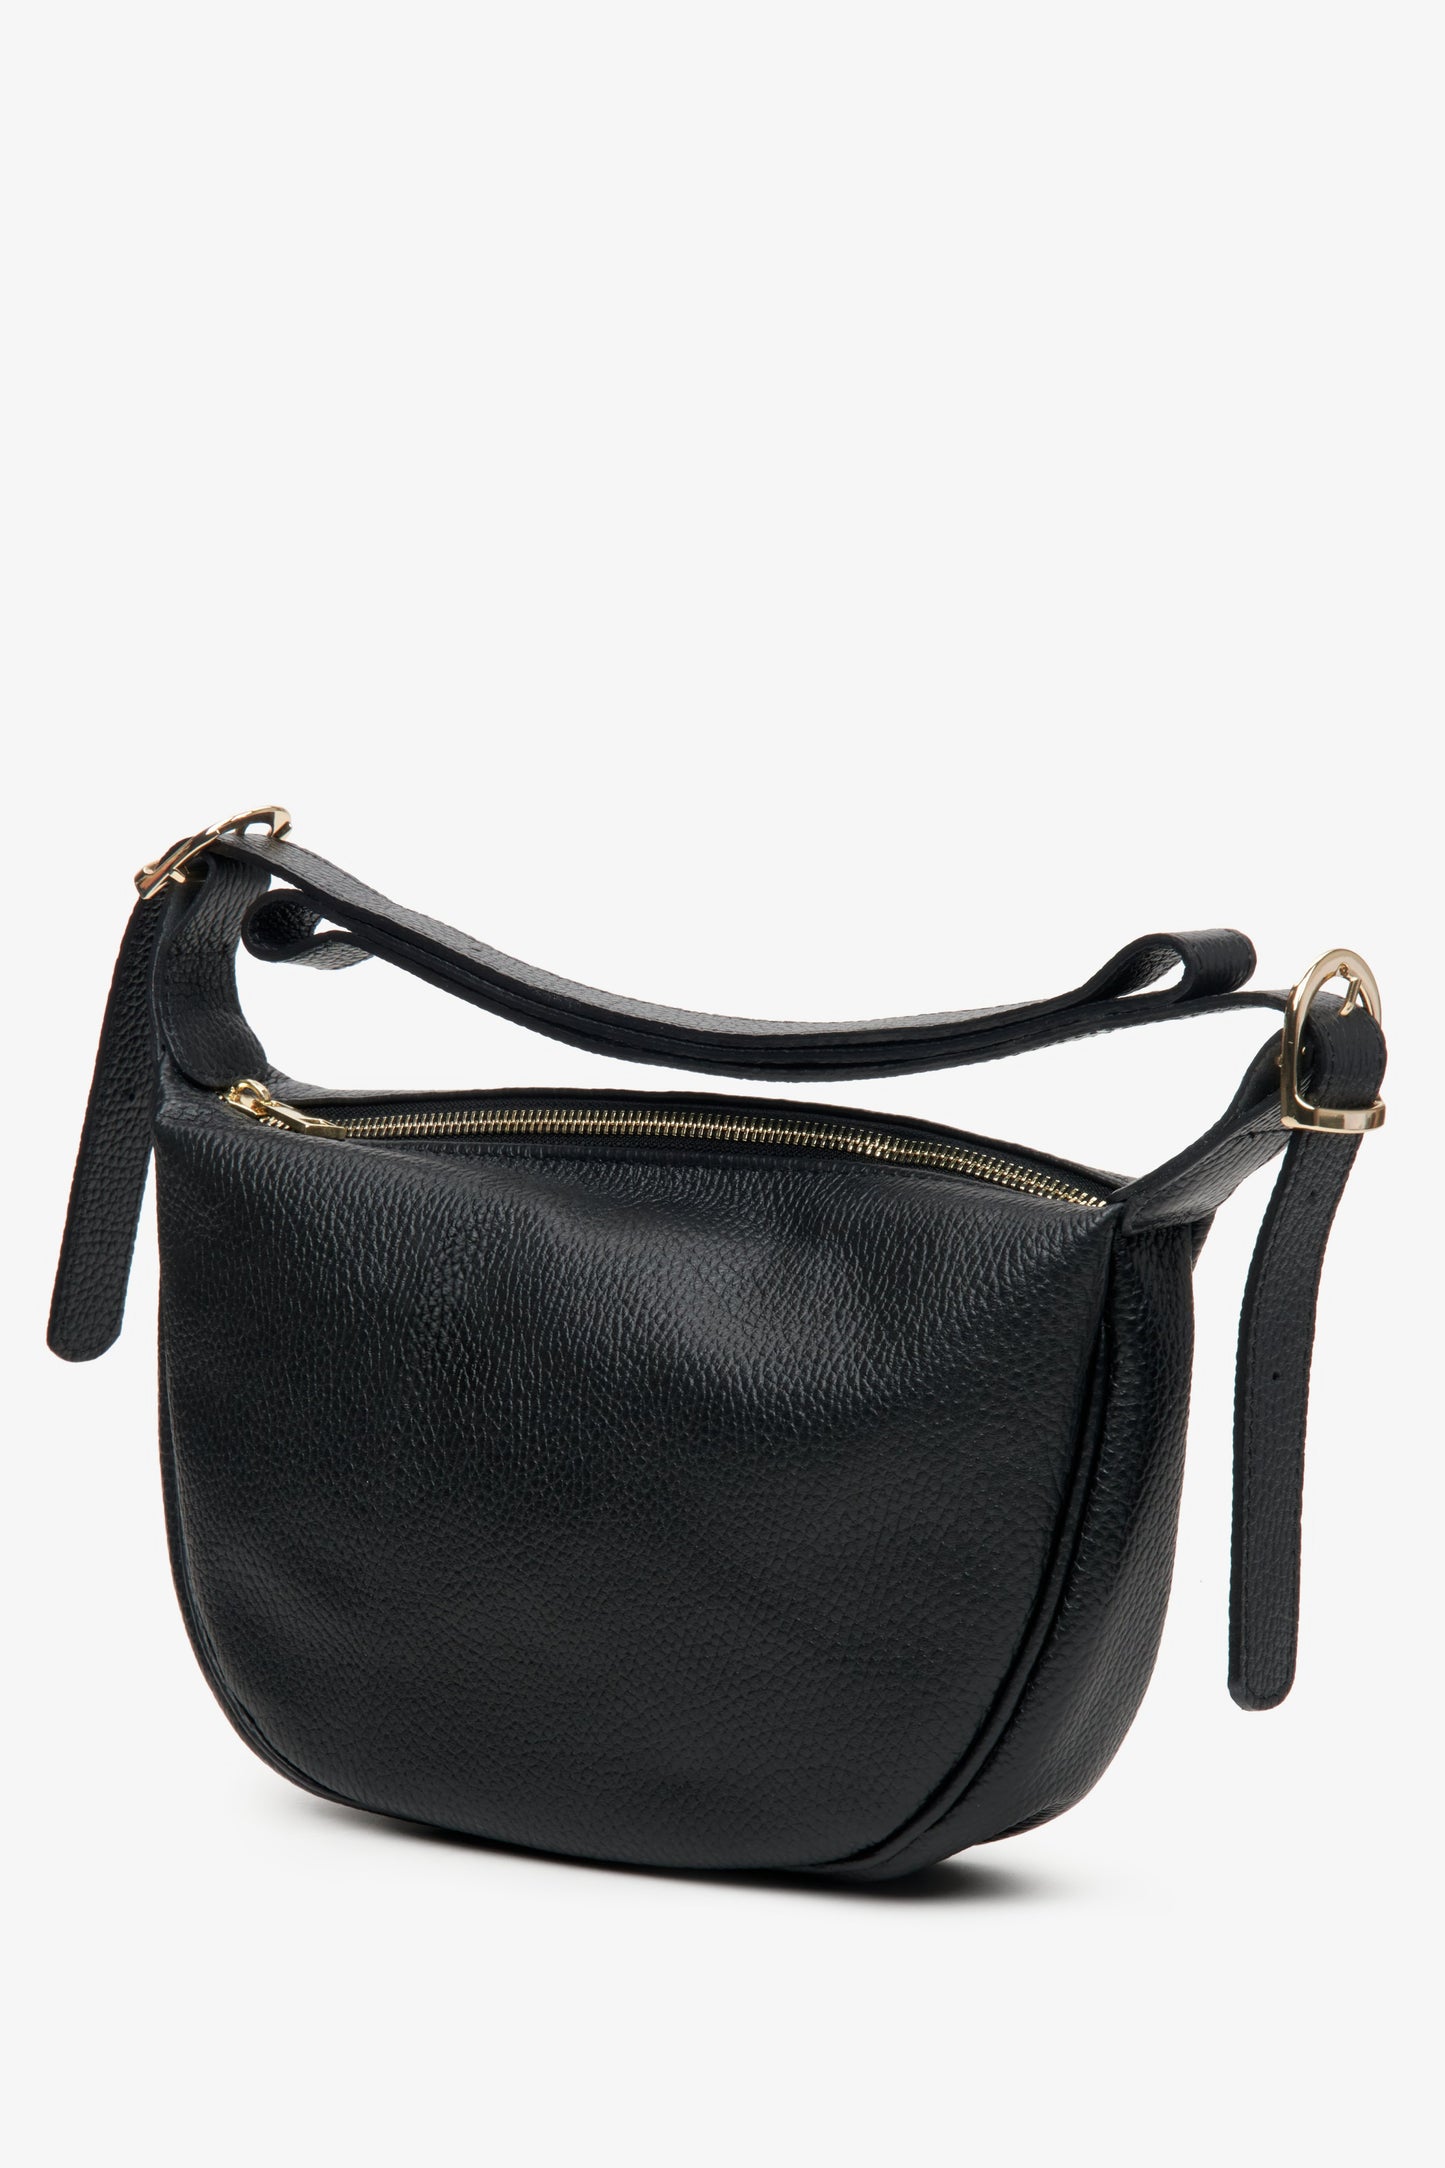 Skórzana torebka damska na ramię Estro w kolorze czarnym - profil modelu.